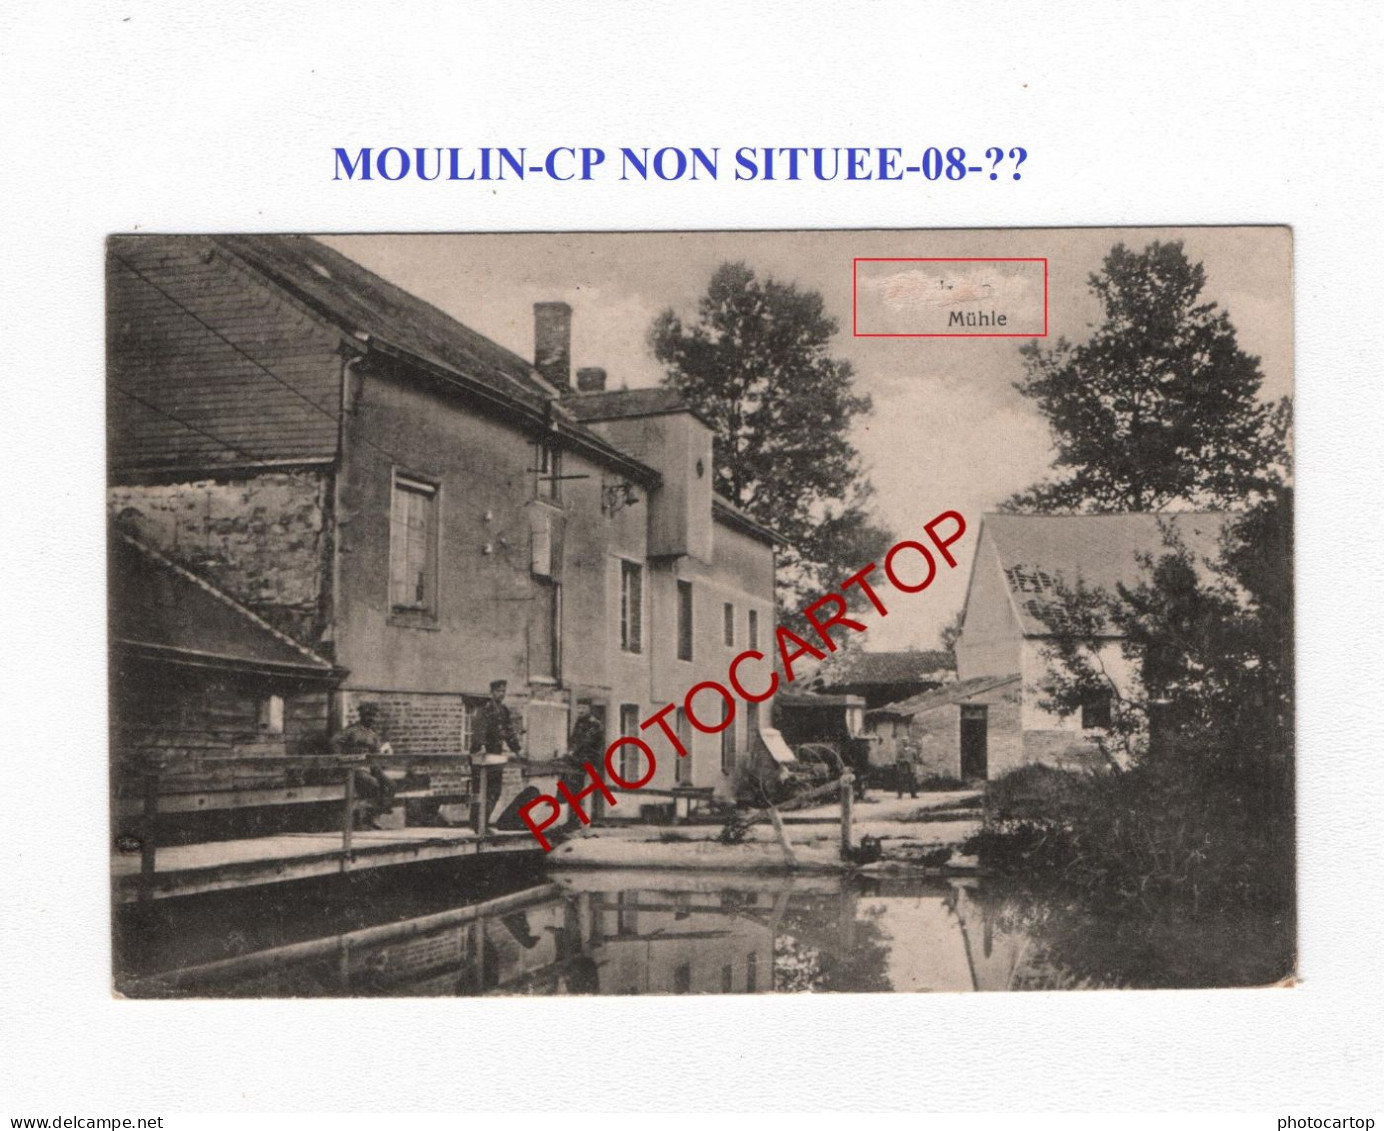 Moulin-CP NON SITUEE-08-??-CARTE Imprimee Allemande-Guerre 14-18-1 WK-France-FELDPOST - Water Mills